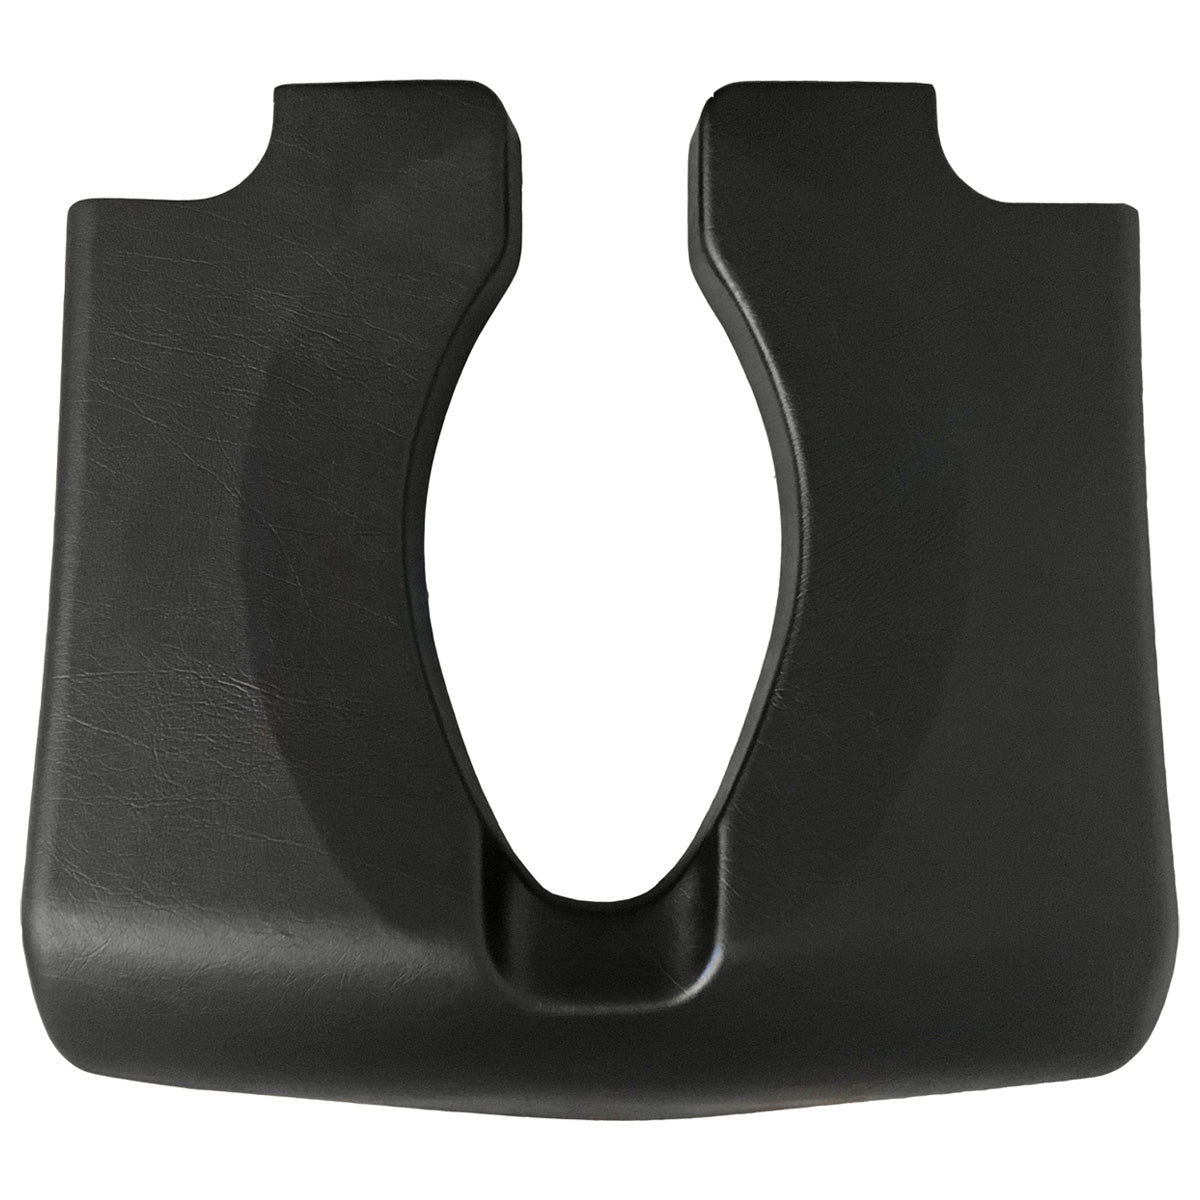 Etac Clean – Soft Comfort Seat (2 cm)